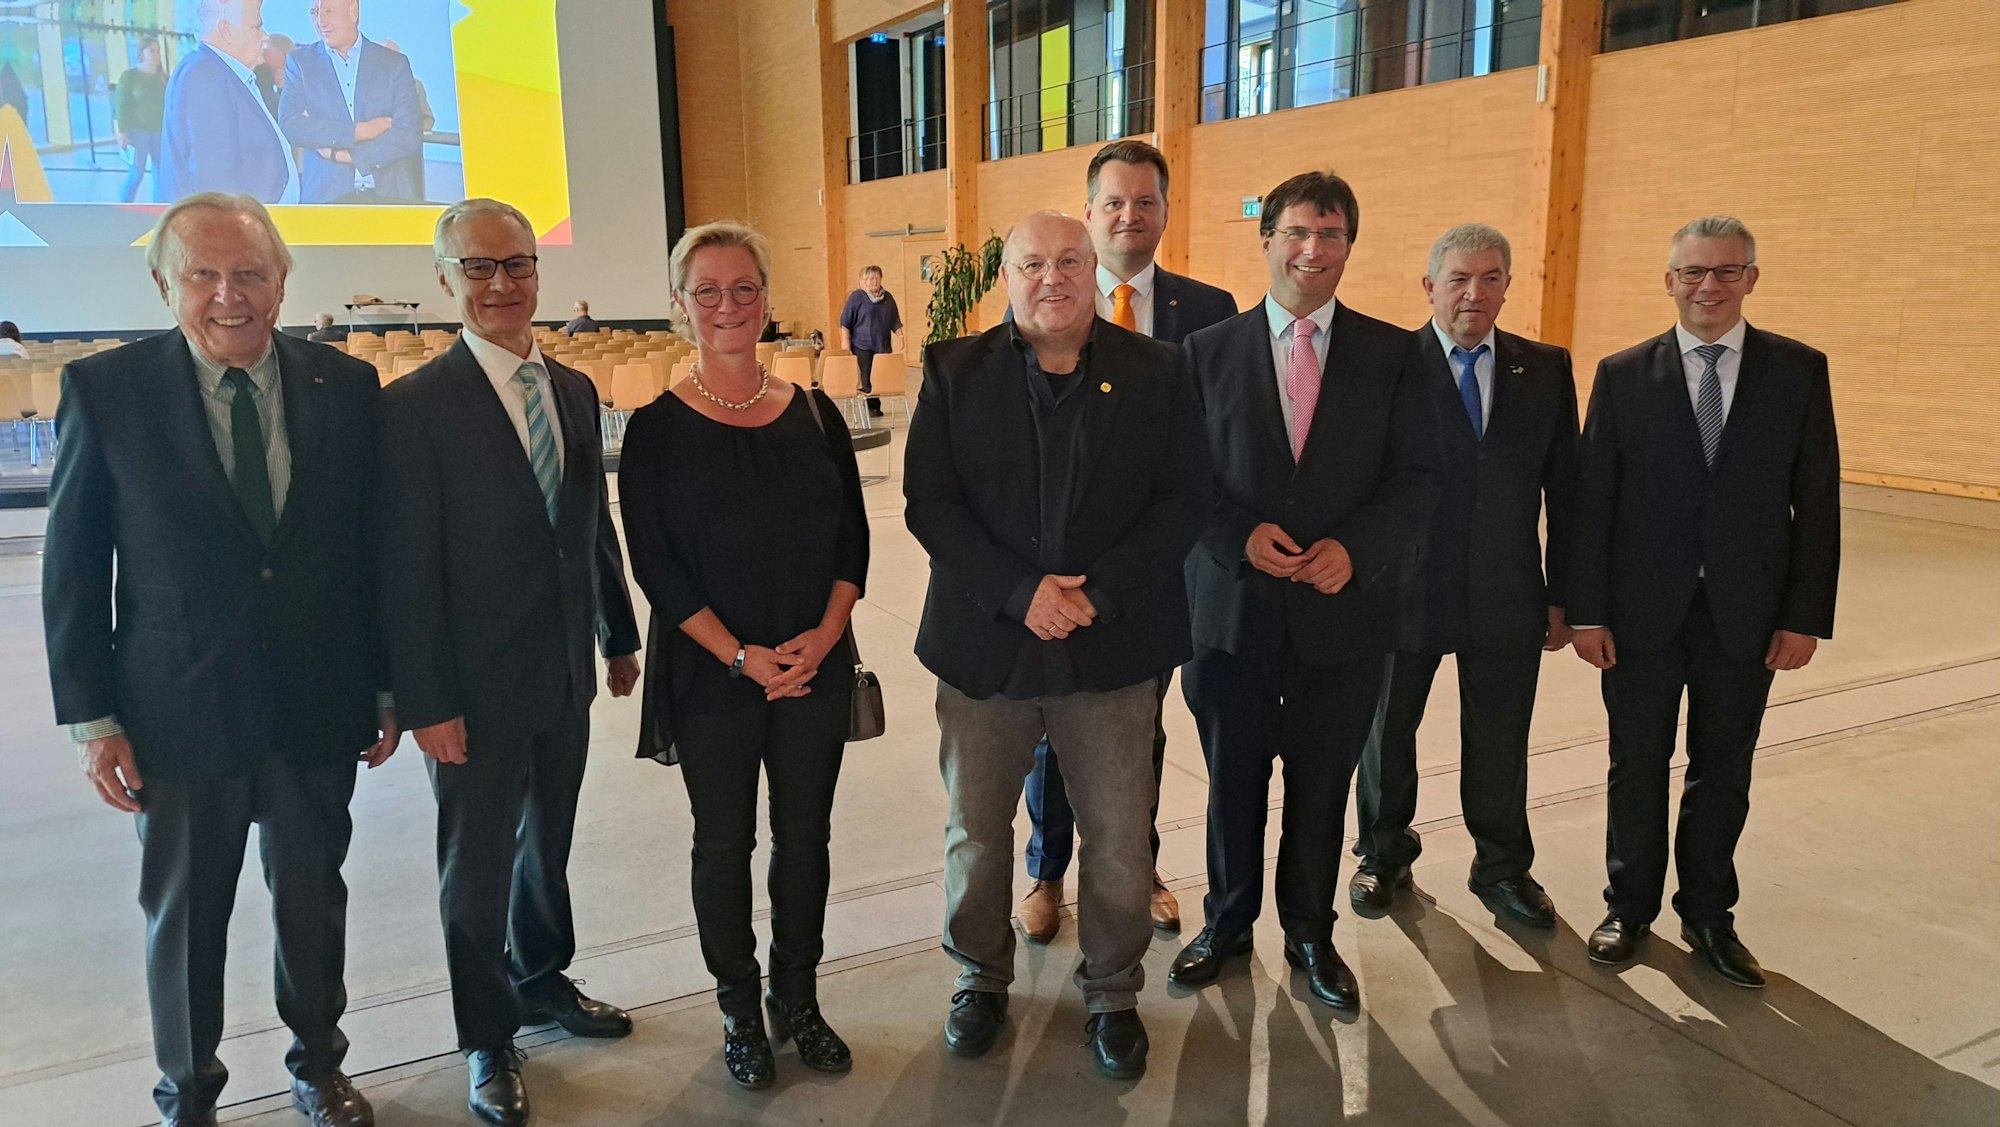 Das Foto zeigt die beiden Preisträger des CDU-Bürgerpreises, Moderator Werner Sülzer und verschiedene Politiker